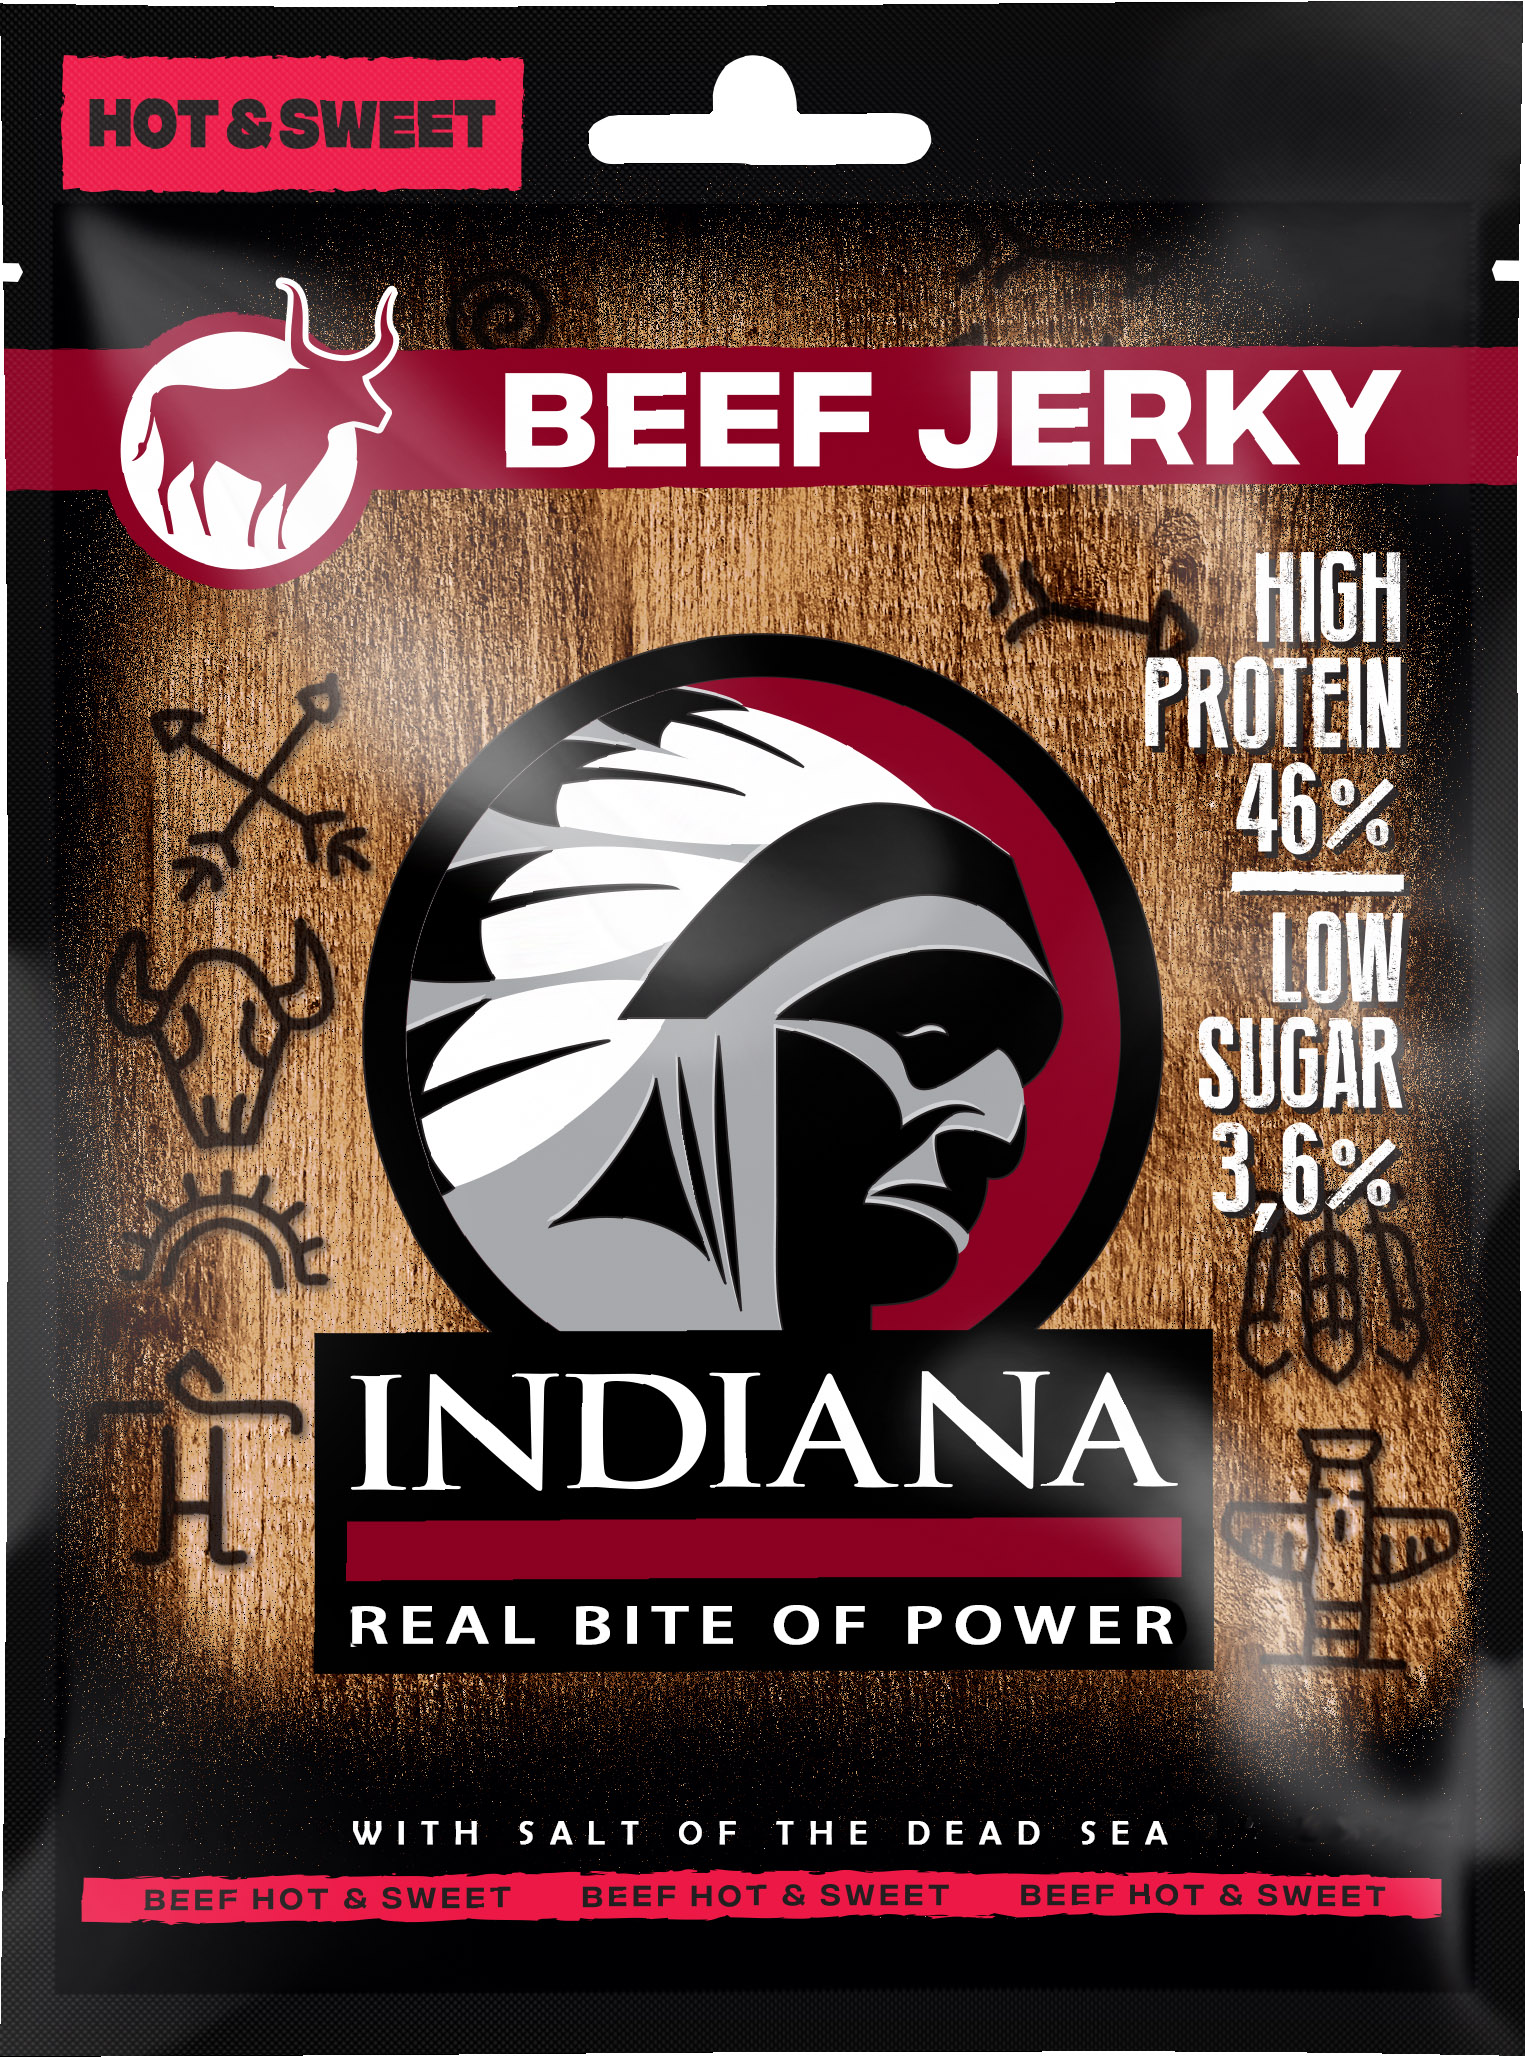 Iindiana Indiana Jerky Beef Hot & Sweet - Hovězí sušené maso s Chilli 25g